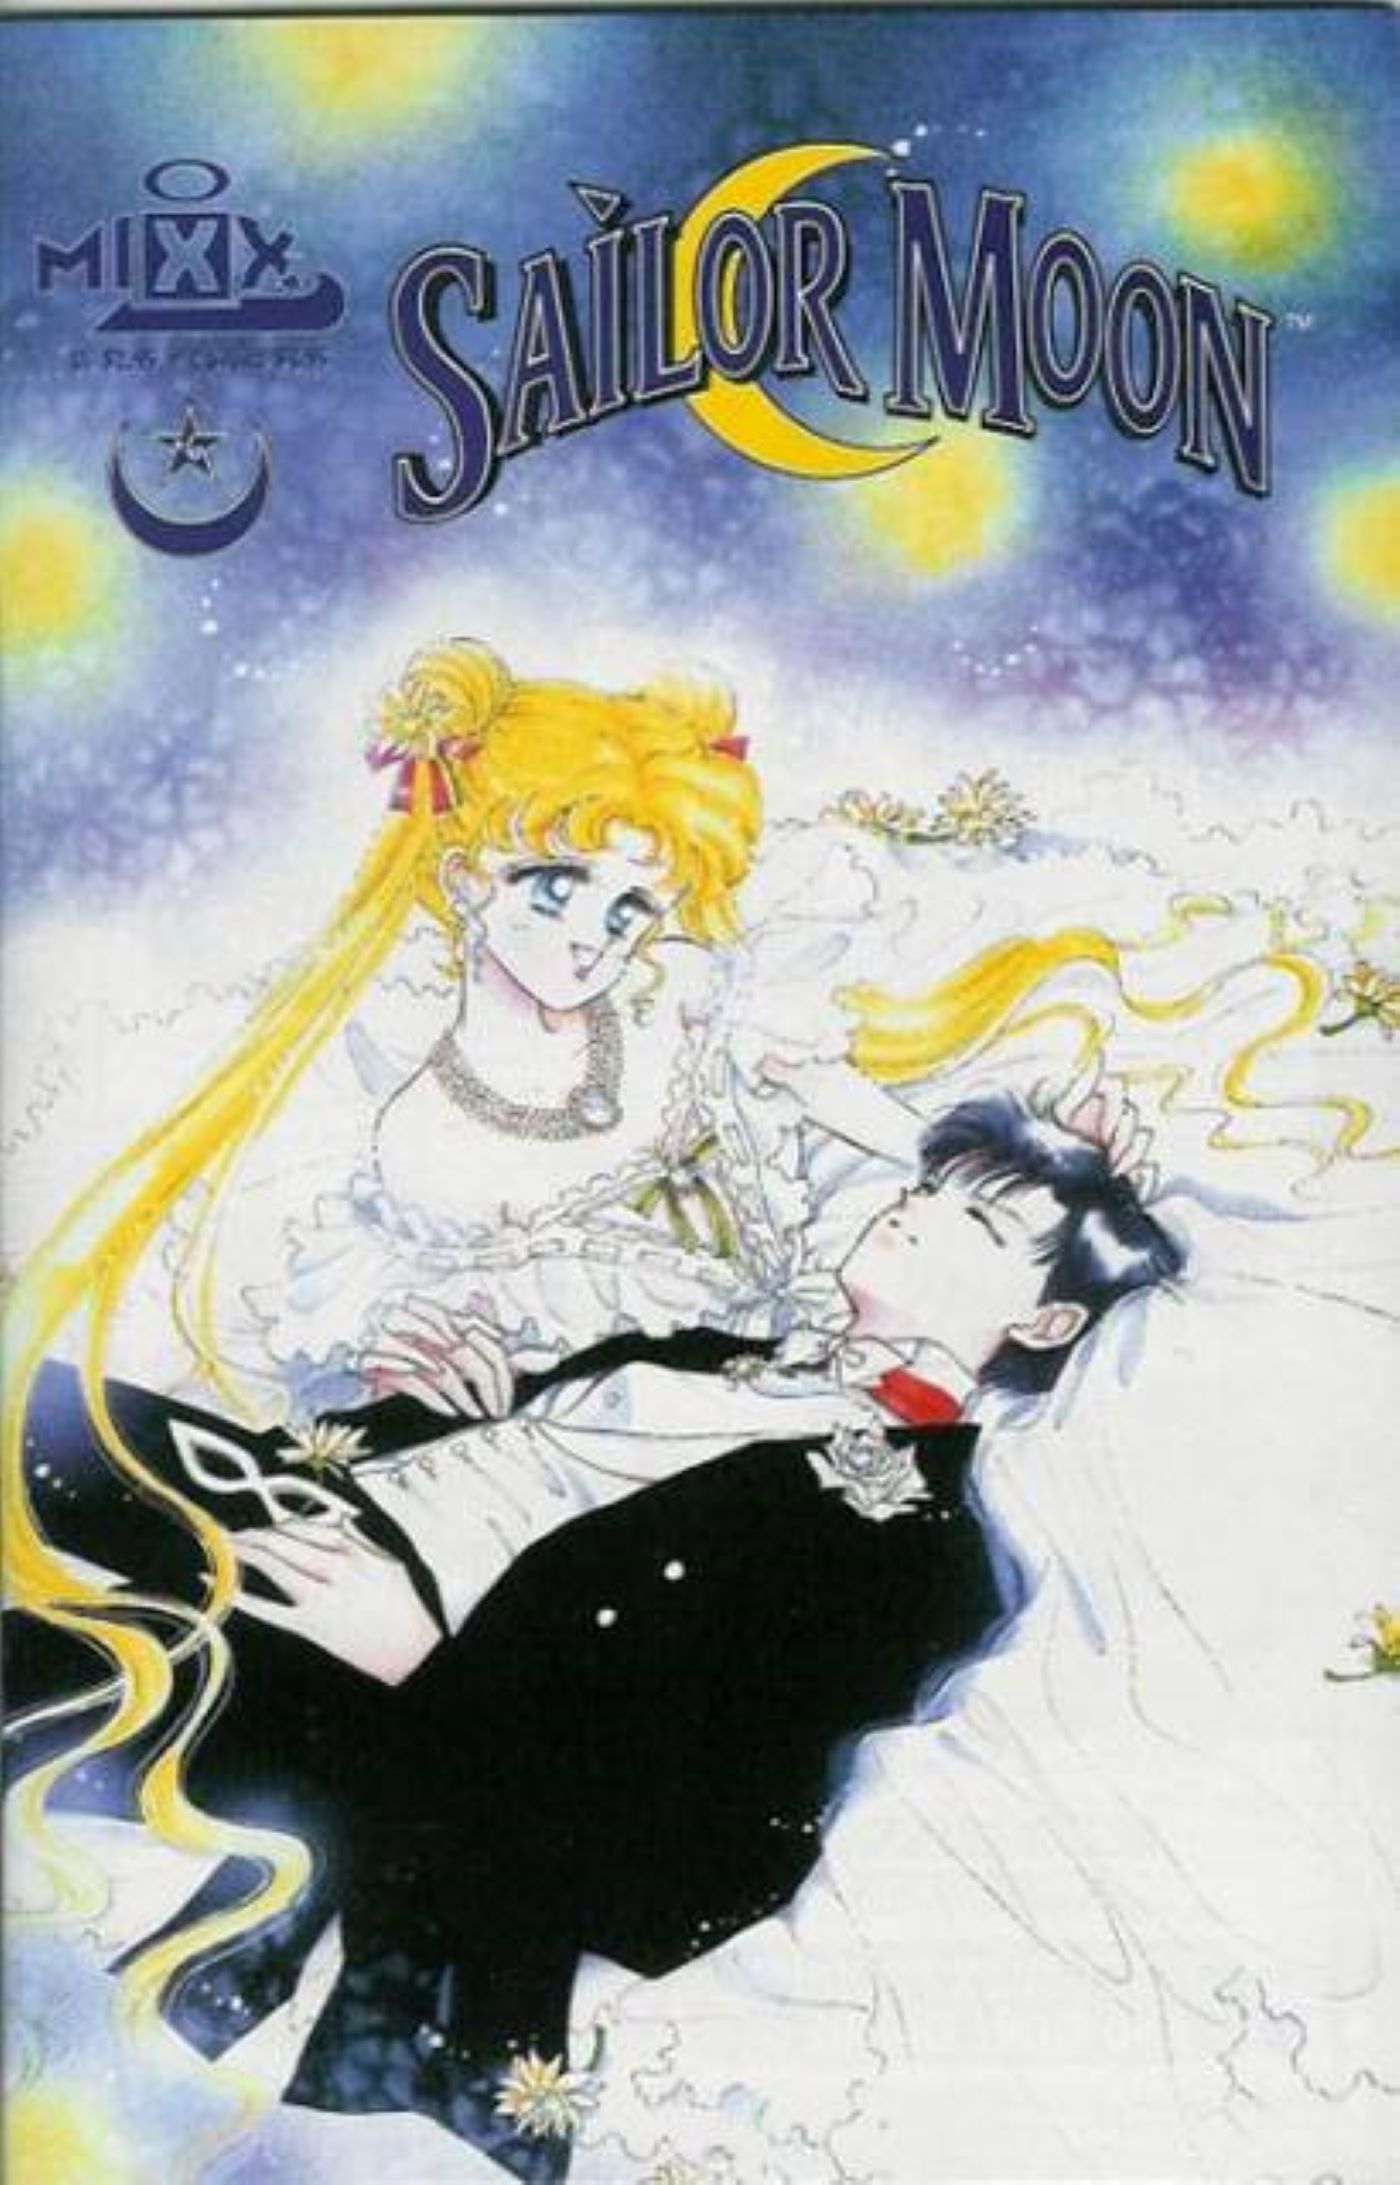 Sailor Moon - Capa 6 retratando Usagi usando um vestido de noiva enquanto ela embala um Tuxedo Mask adormecido.